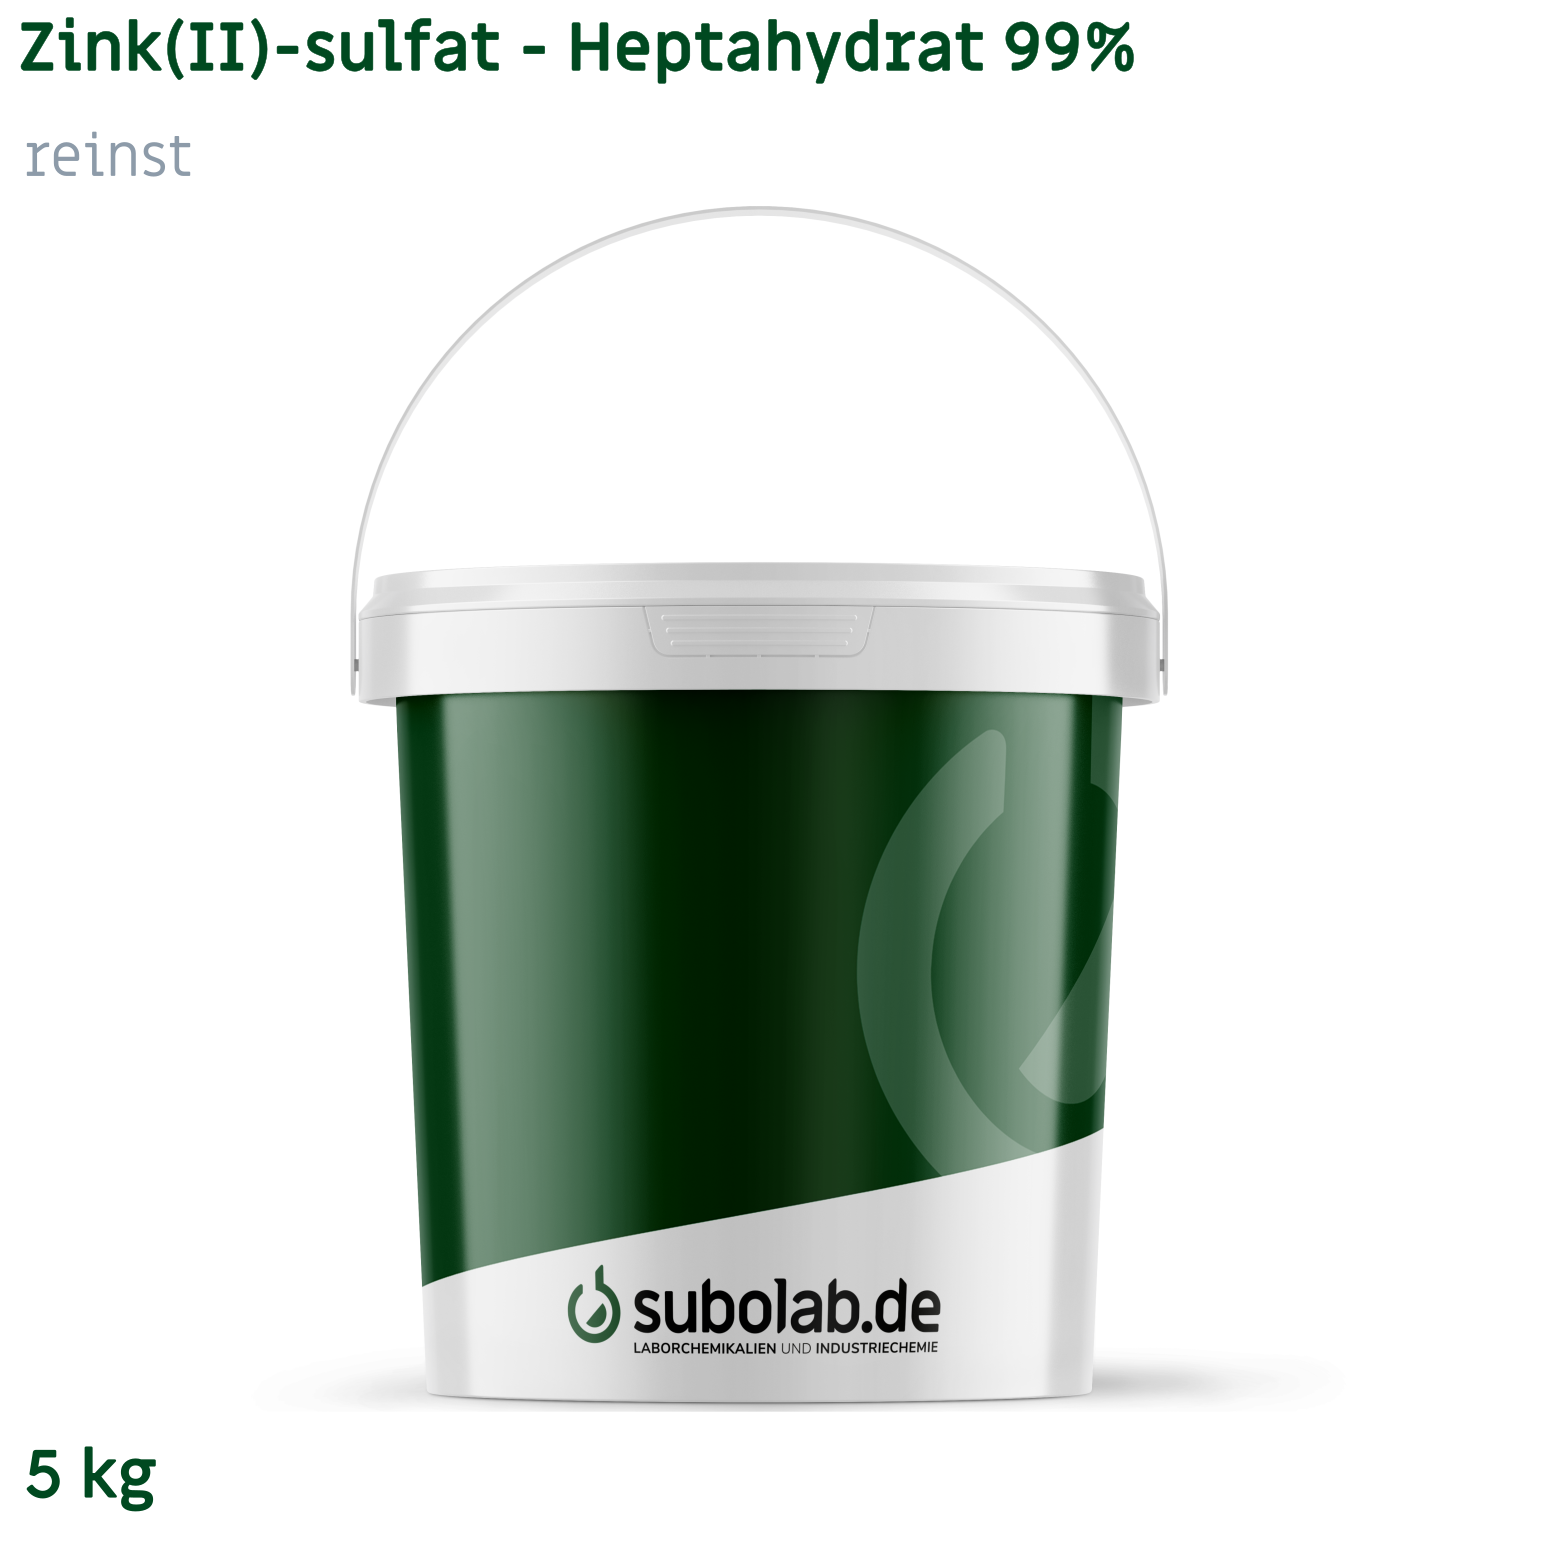 Bild von Zink(II)-sulfat - Heptahydrat 99% reinst (5 kg)